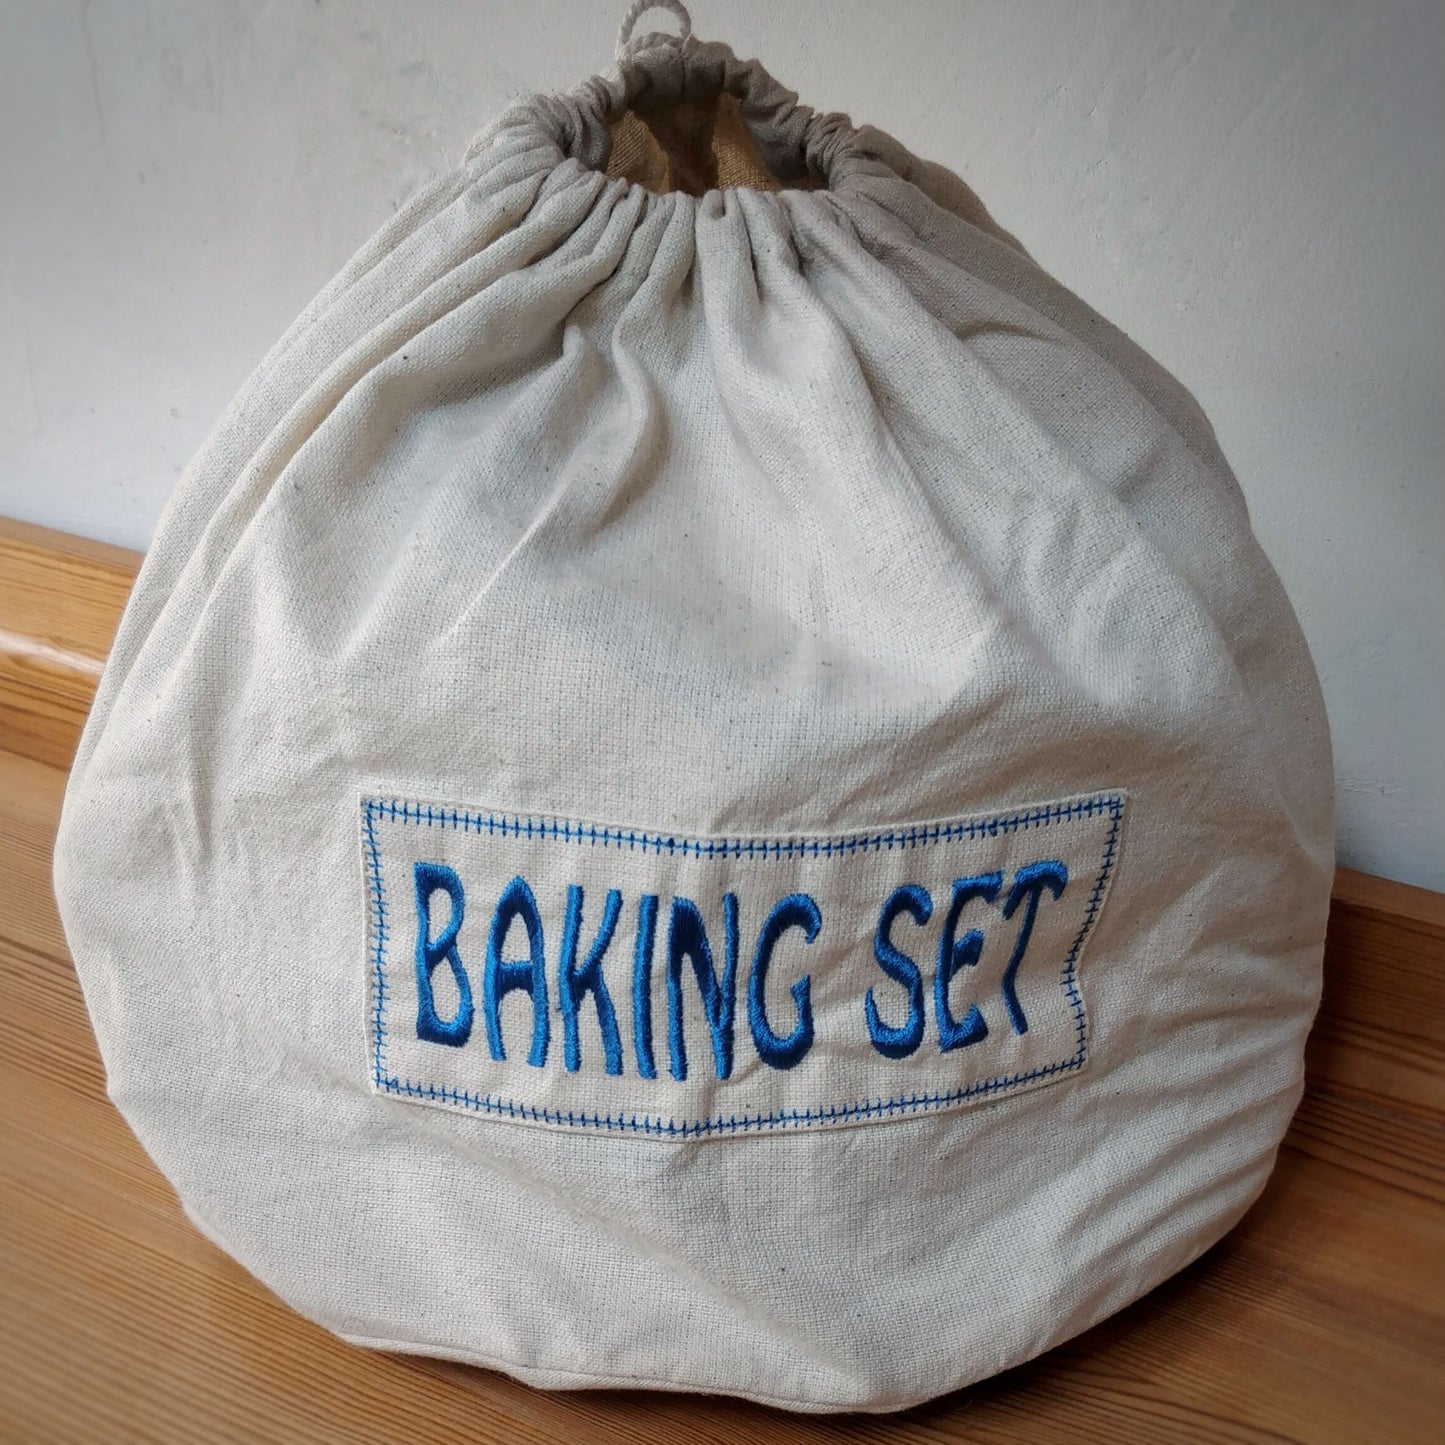 Ultimate Baker Toy Baking + Cake Set in Fair Trade Cotton - baking set bag